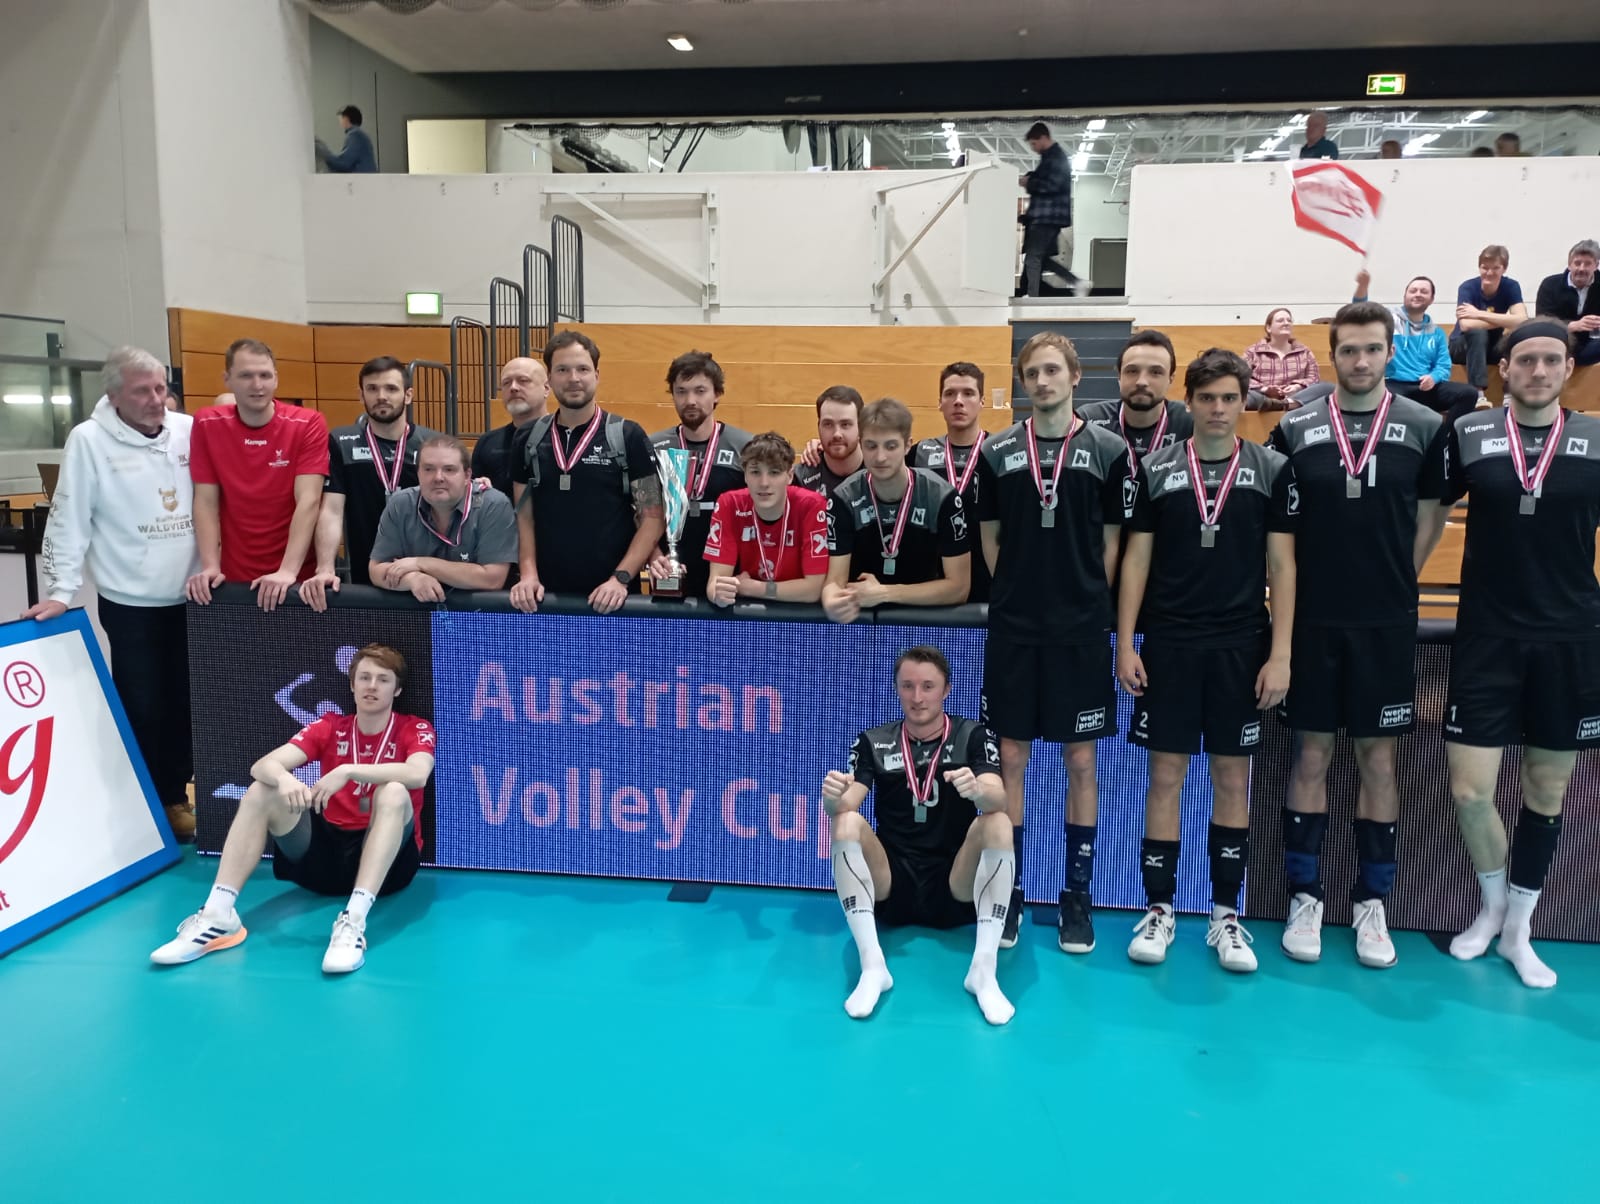 Nordmänner erreichen Platz 2 im Austrian-Volley-Cup